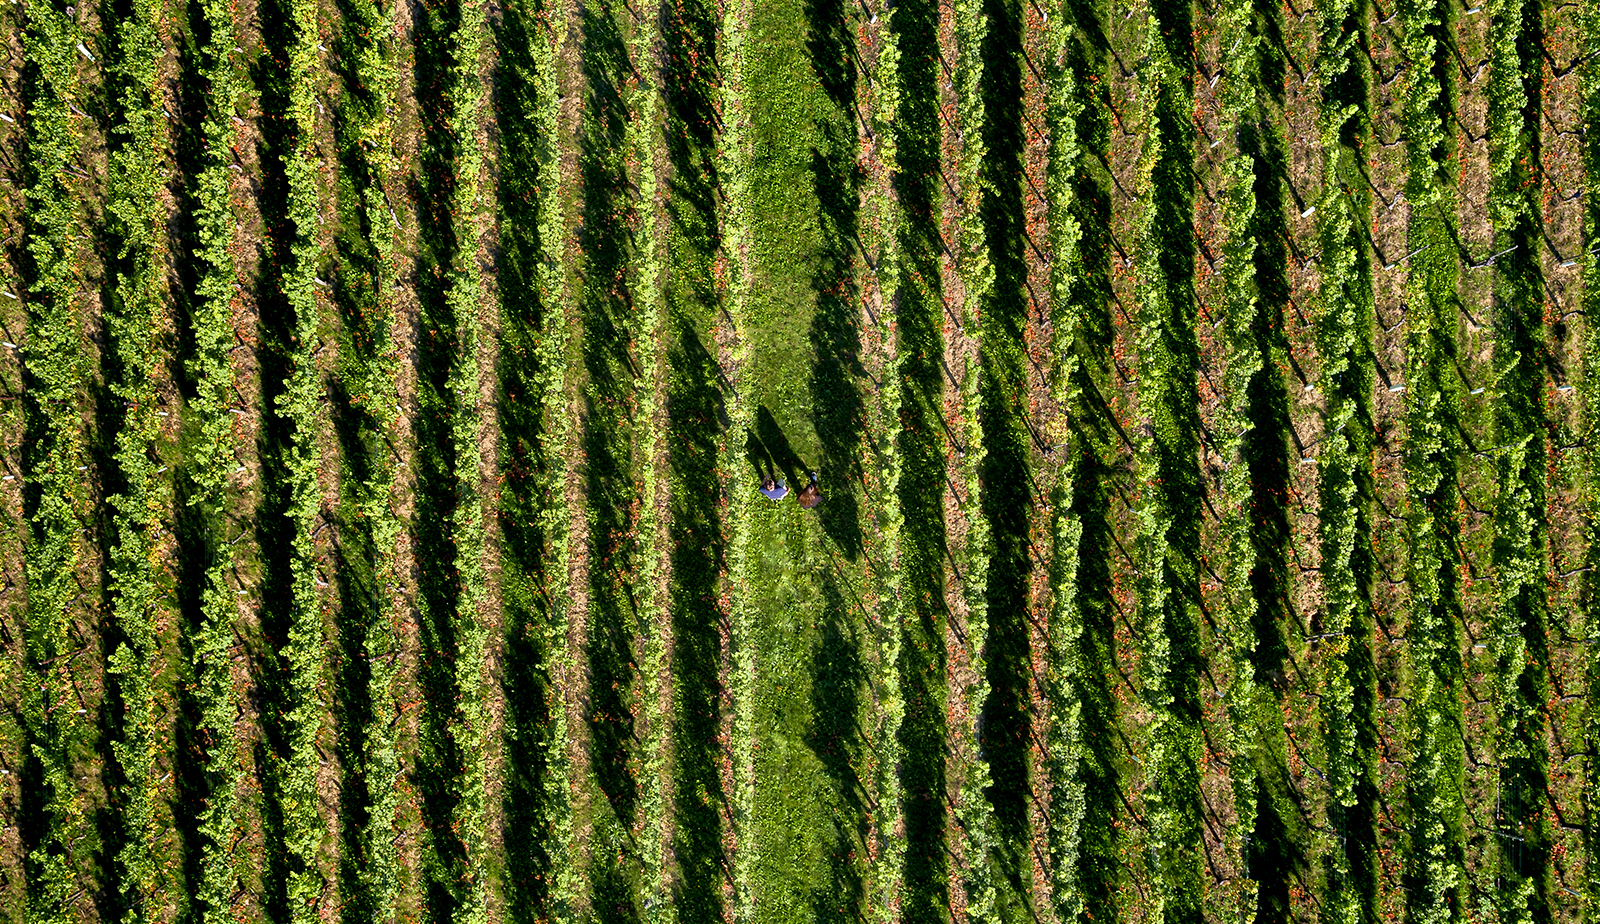 Dronefoto waarop een Limburgse wijngaard te zien is, met in het midden twee mensen die erdoorheen lopen.